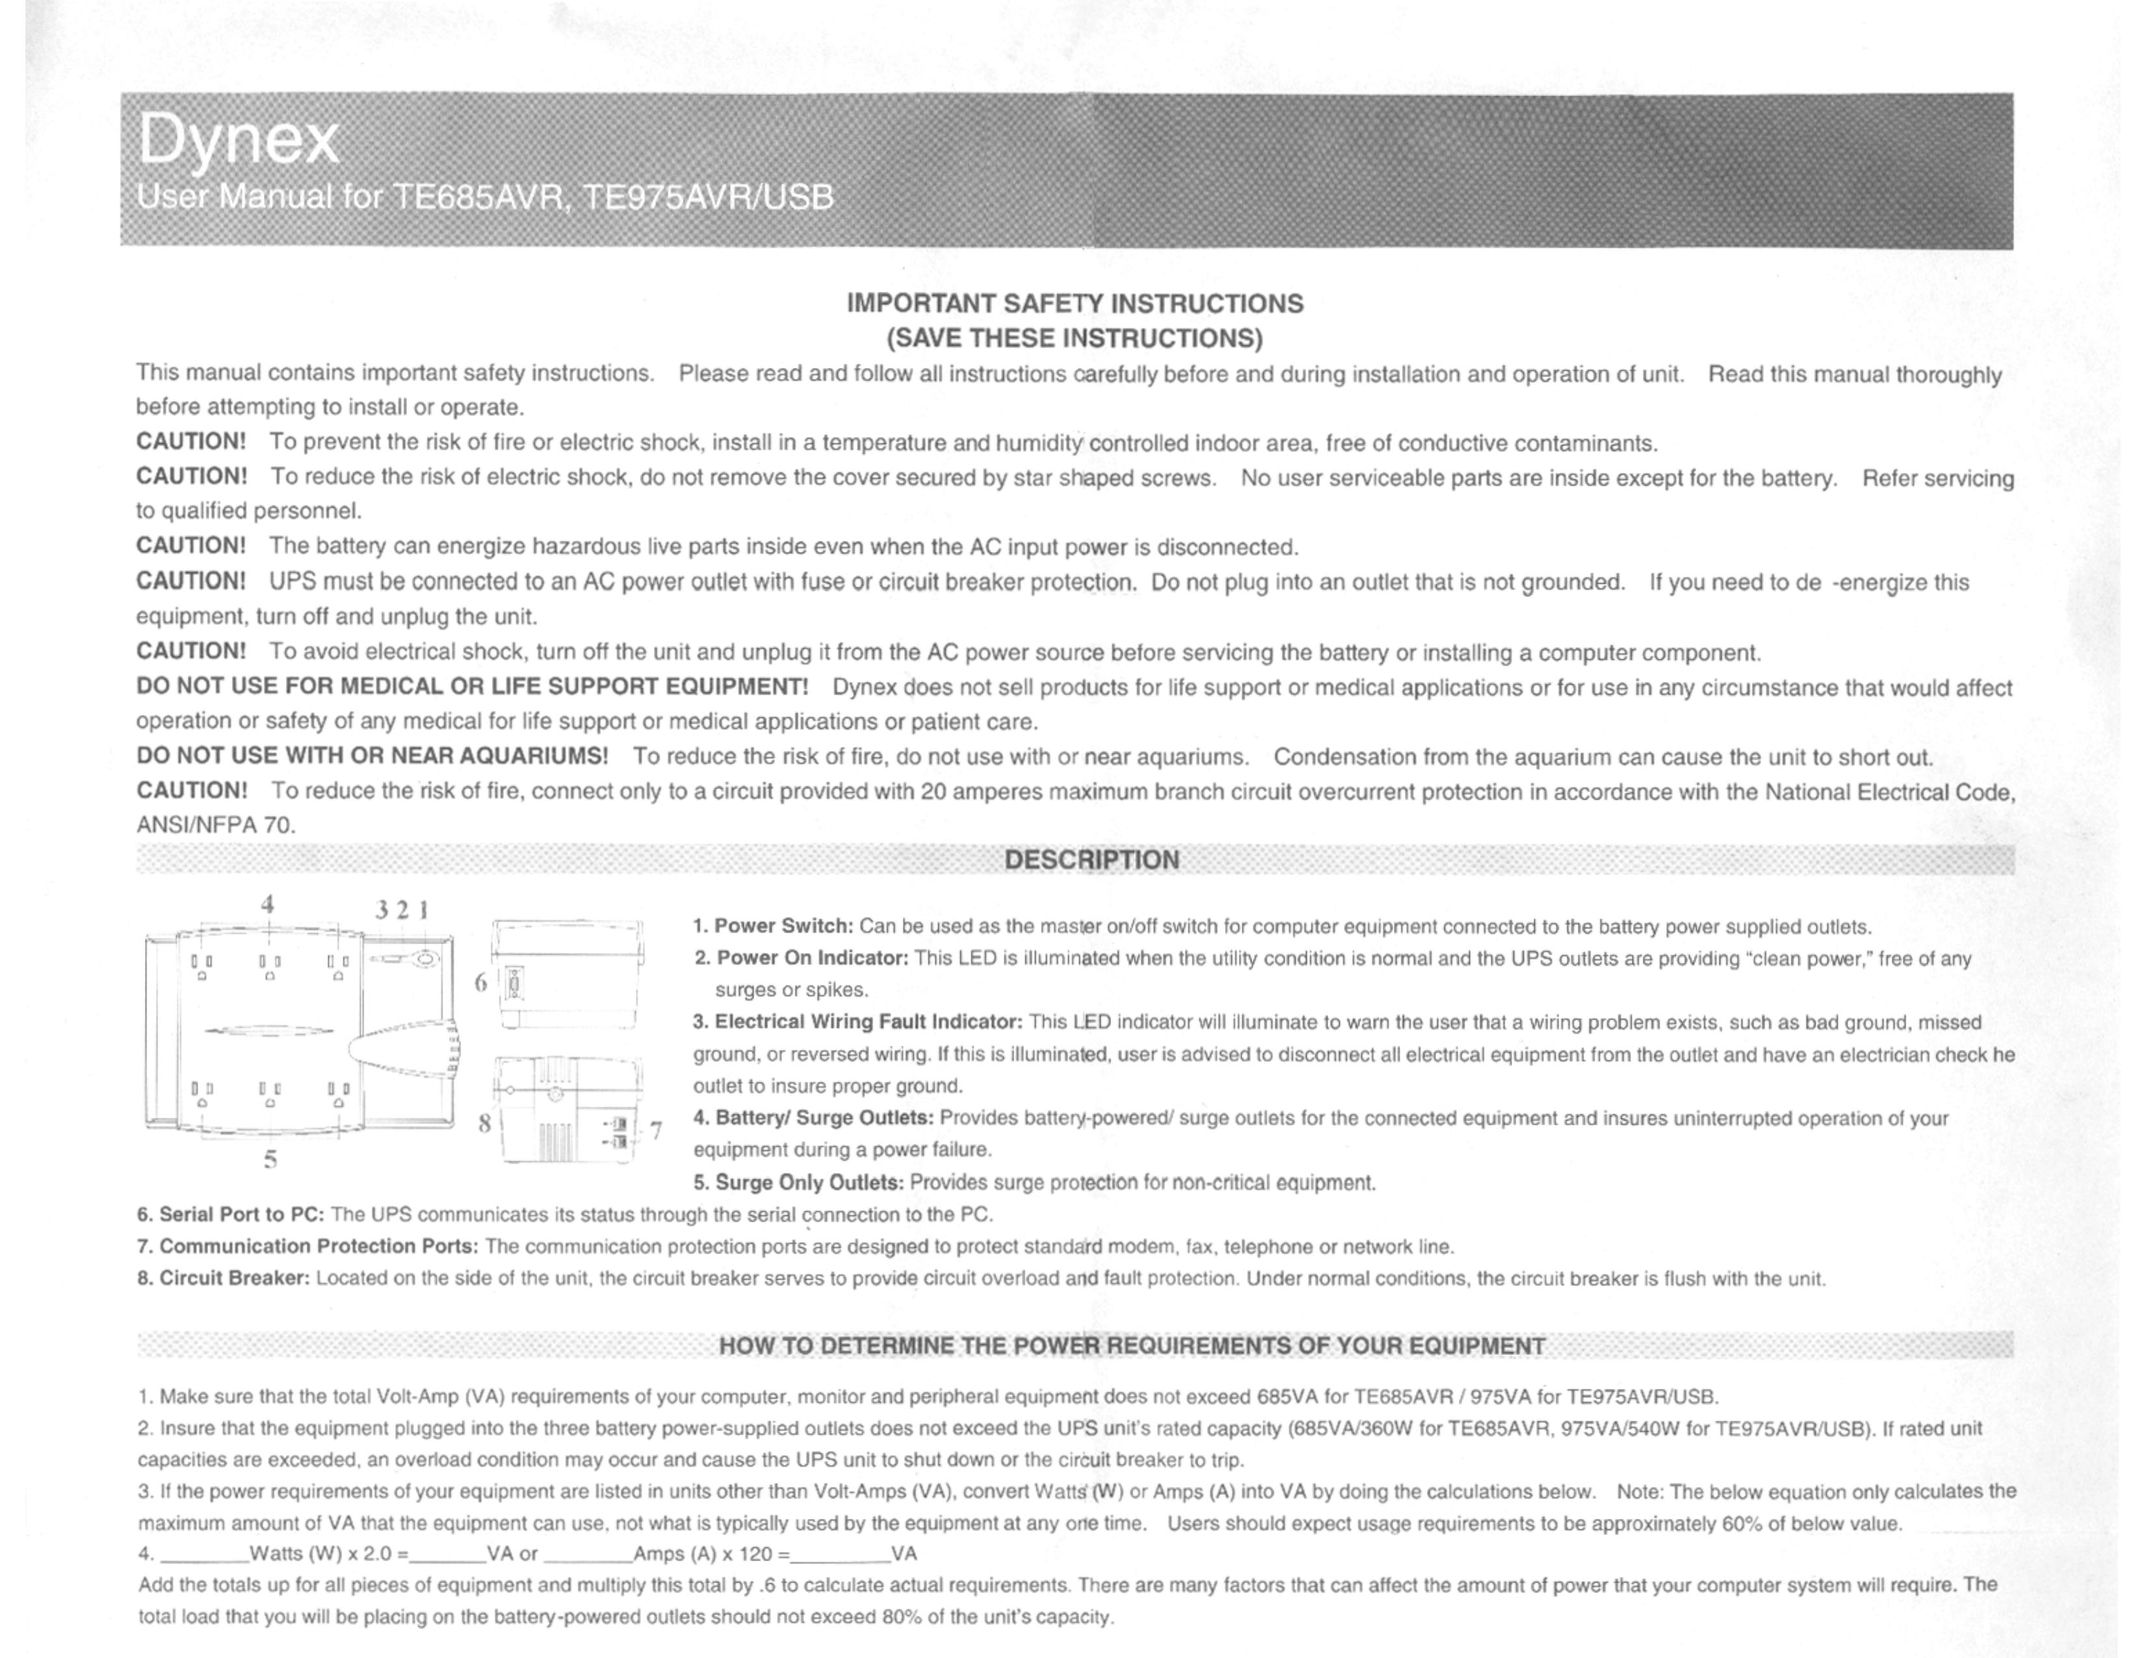 Dynex TE975USB Power Supply User Manual